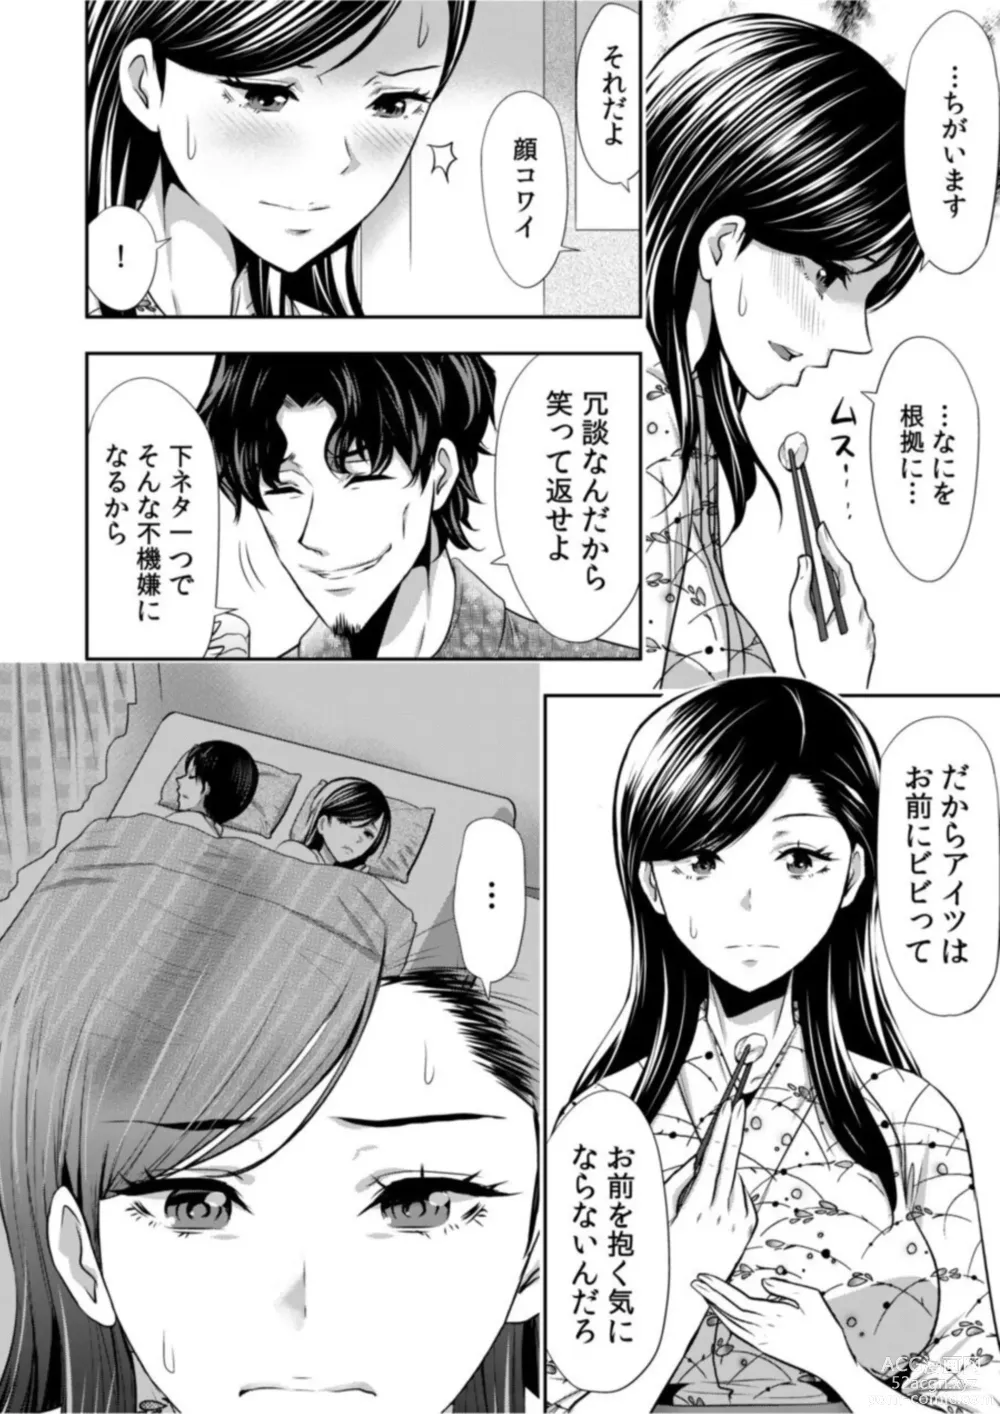 Page 10 of manga Daikirai na Motokare Joushi to Masakano Shucchou Aibeya... Massage no Hazu ga Asa made Nandomo Nandomo... 1